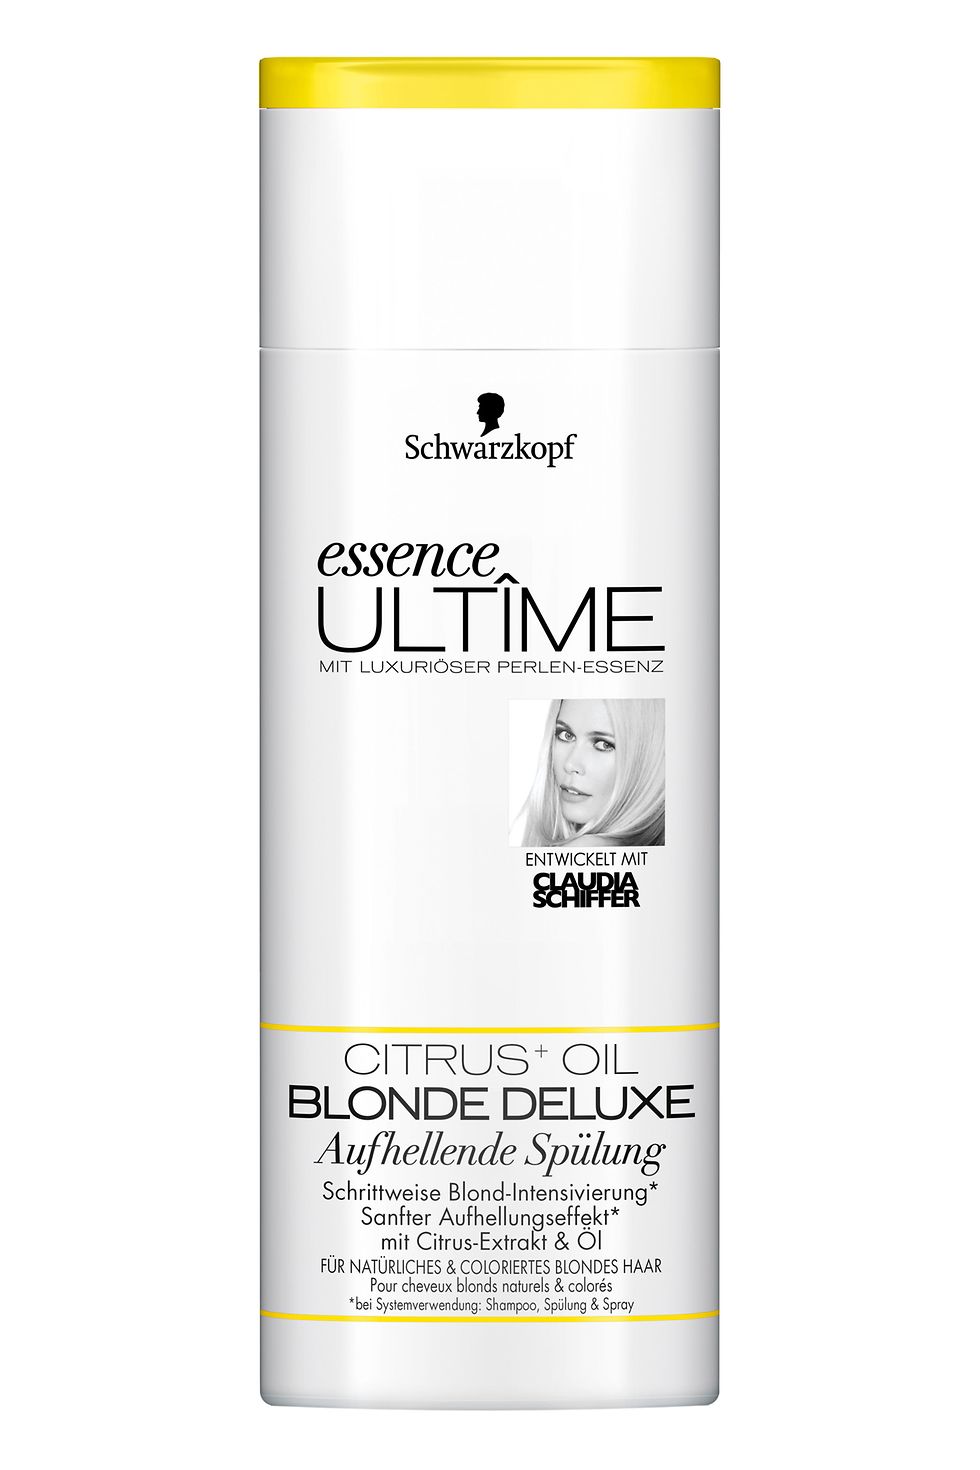 essence Ultîme Blonde Deluxe mit Citrus Extrakt und Öl Aufhellende Spülung